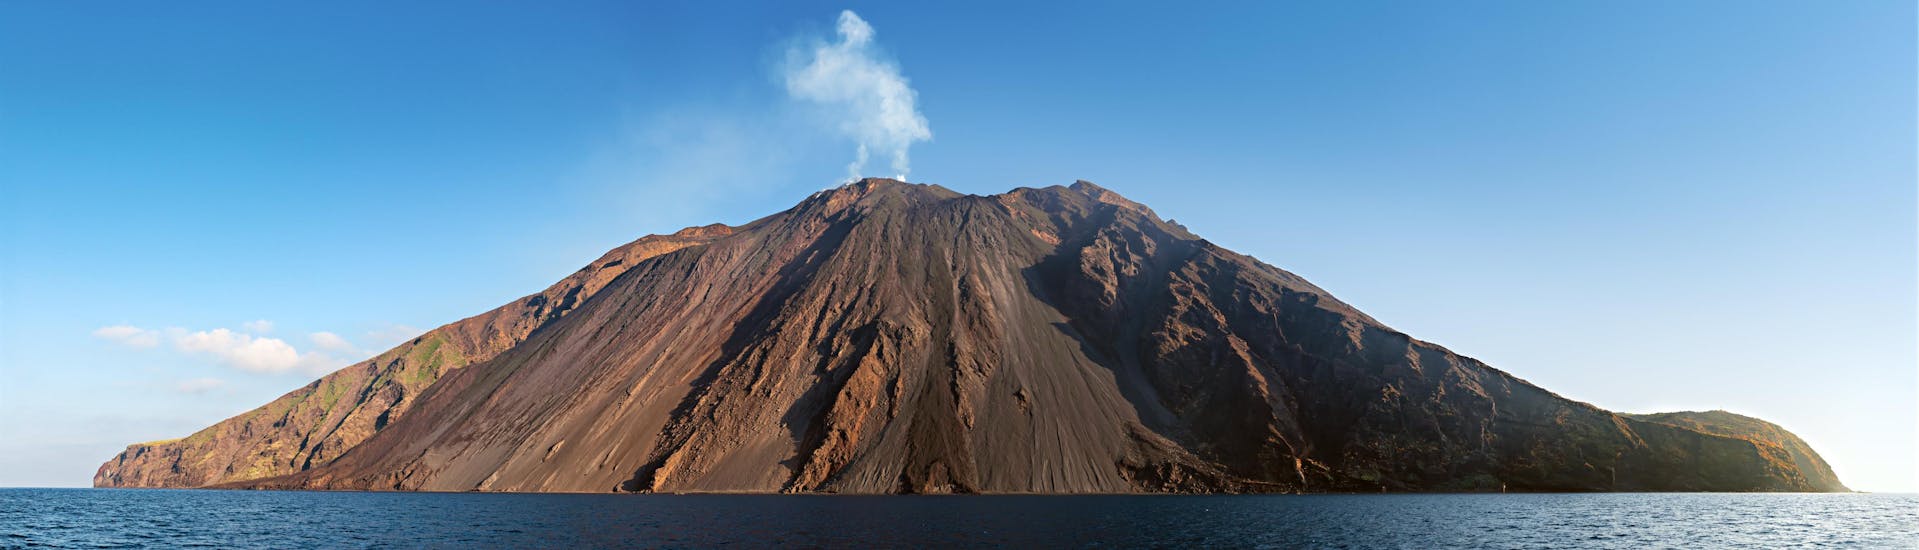 Foto van de vulkaan Stromboli, een populaire toeristische bezienswaardigheid op Sicilië.